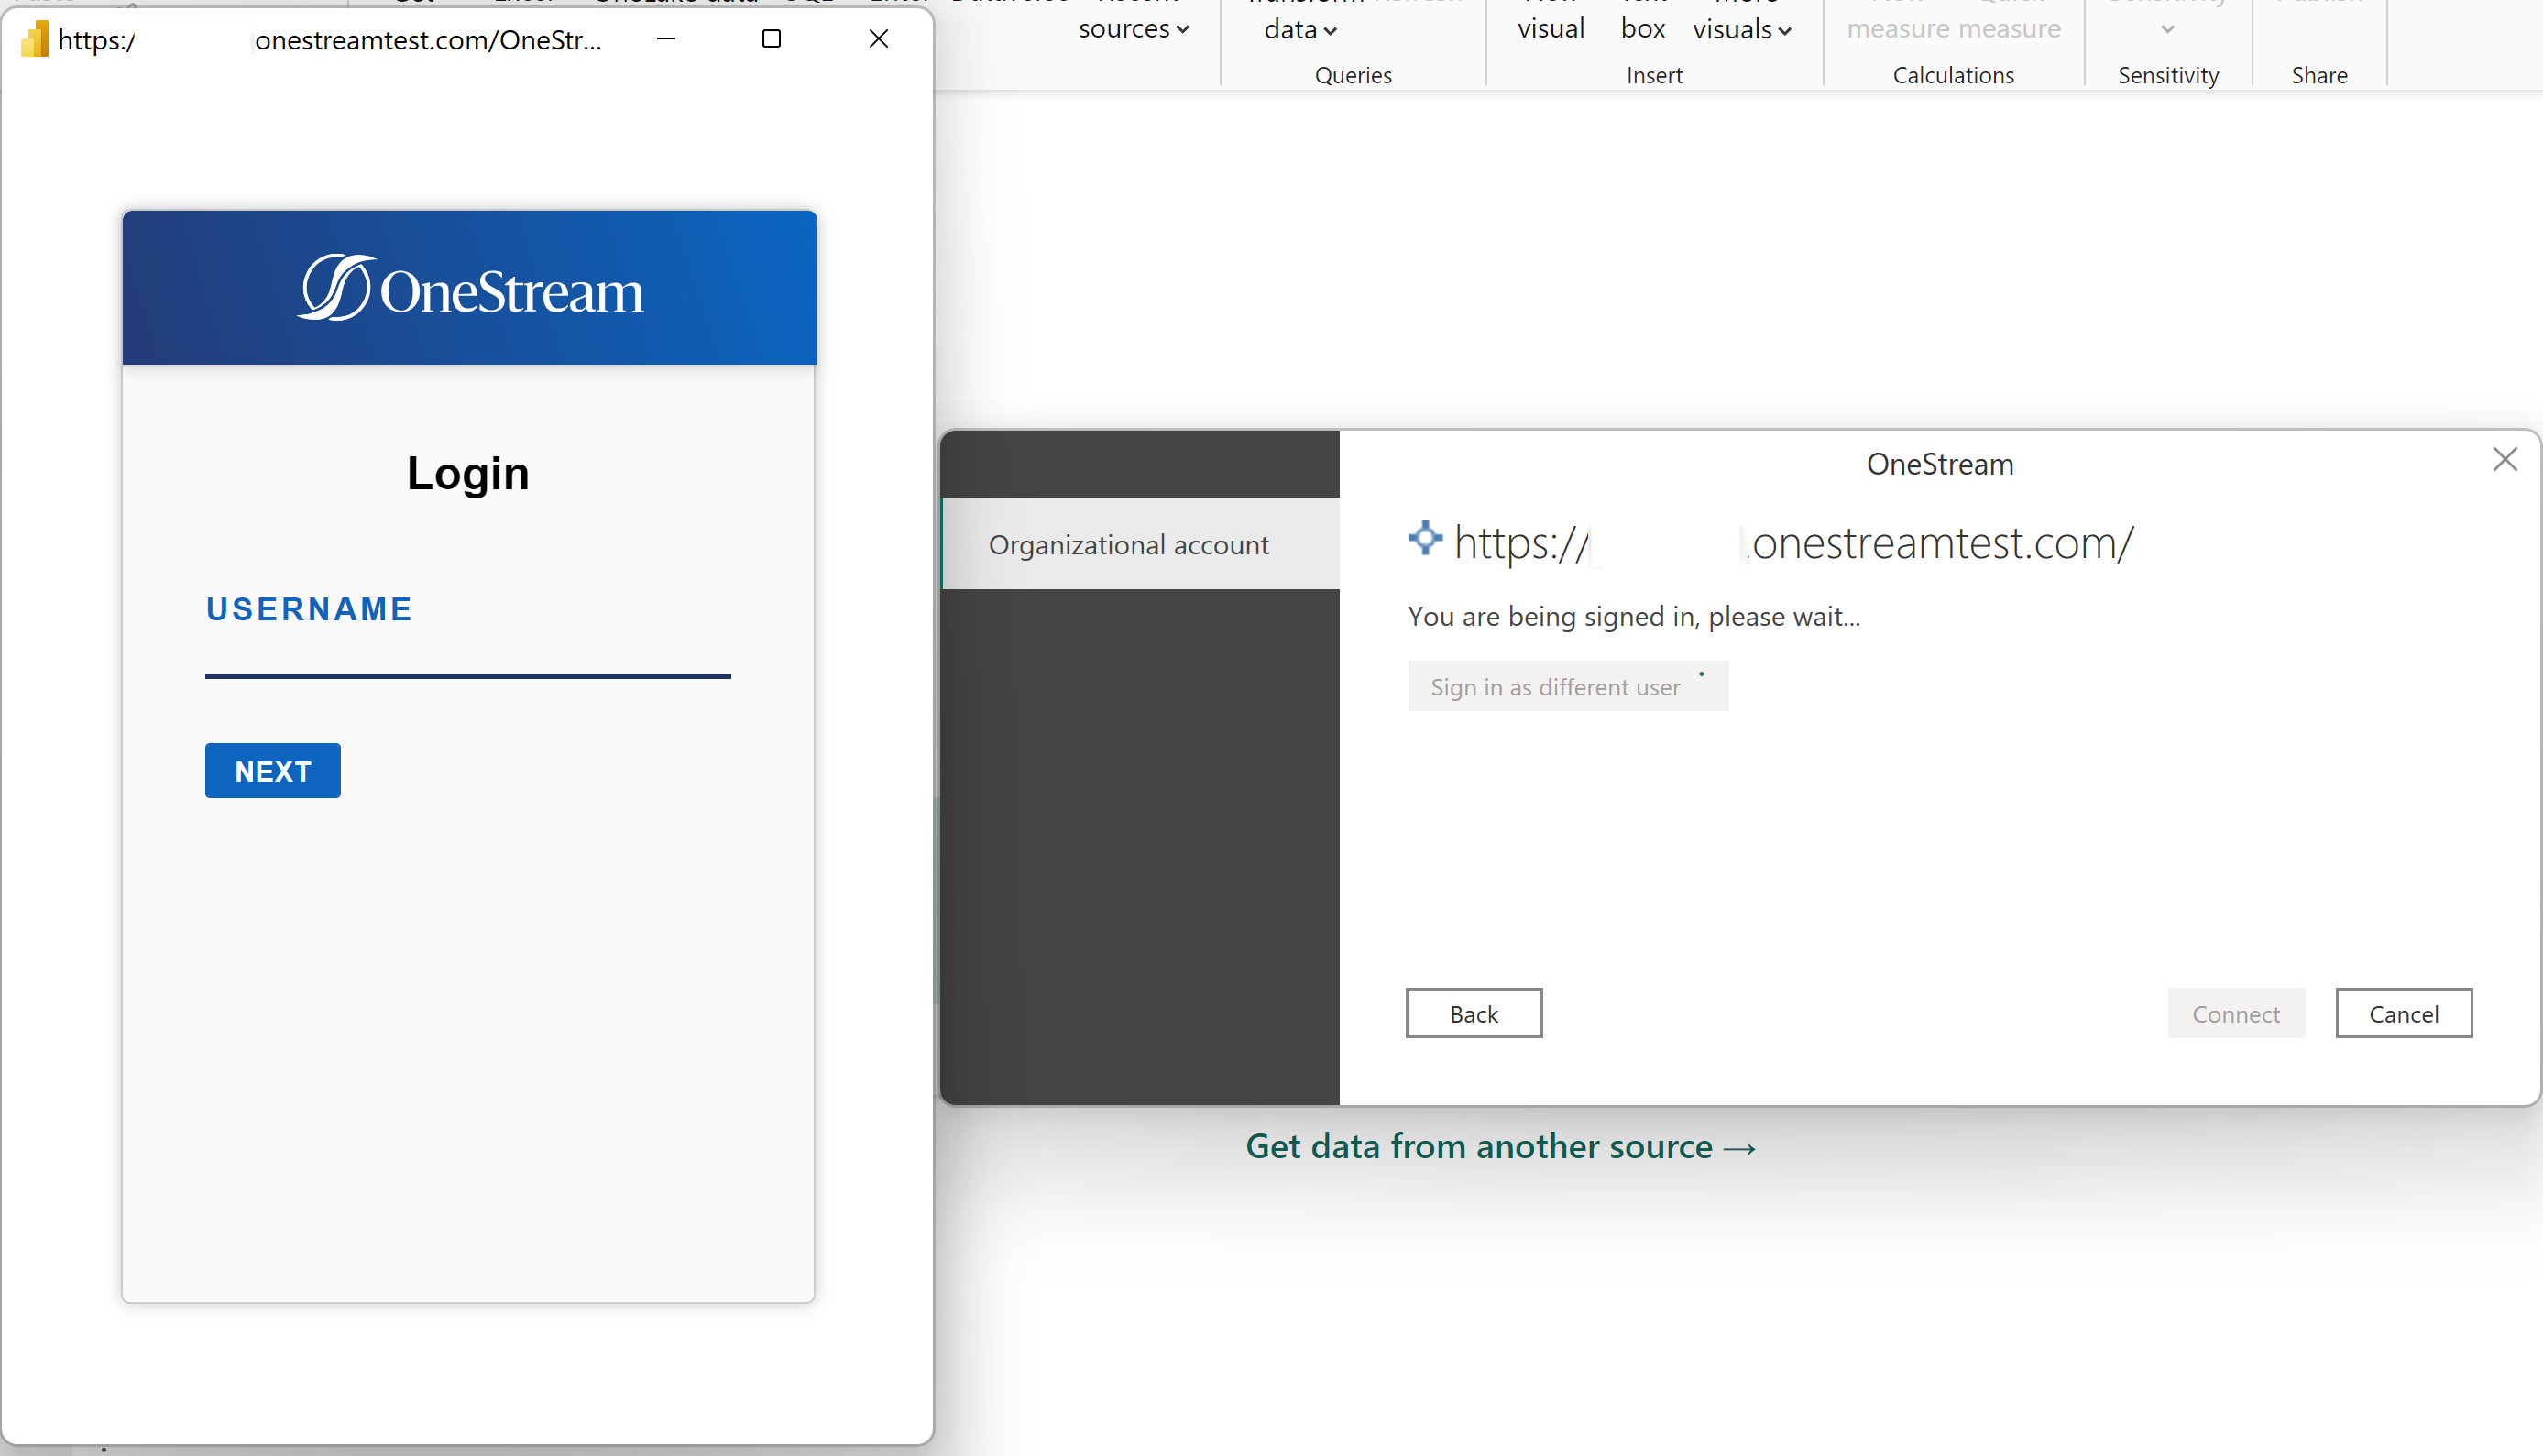 Captura de tela da caixa de diálogo de autenticação com a caixa de diálogo de login do OneStream exibida.